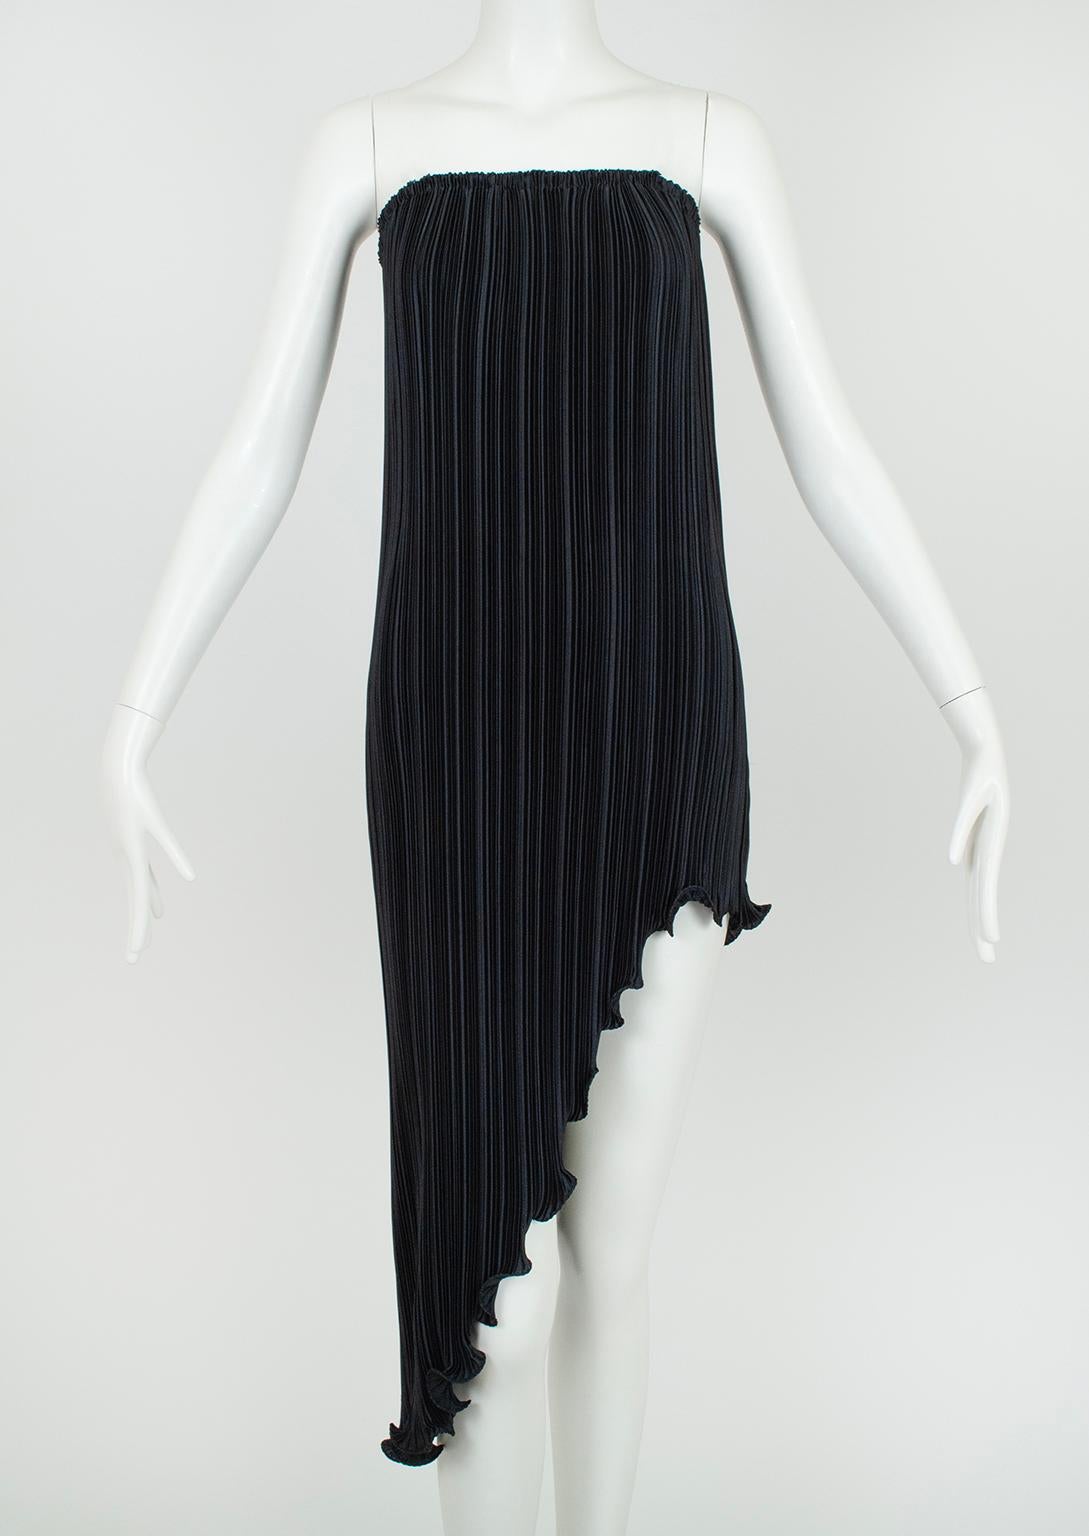 New Tarquin Ebker Black White Asymmetrical Delphos Dress w Provenance – S, 1978 For Sale 4